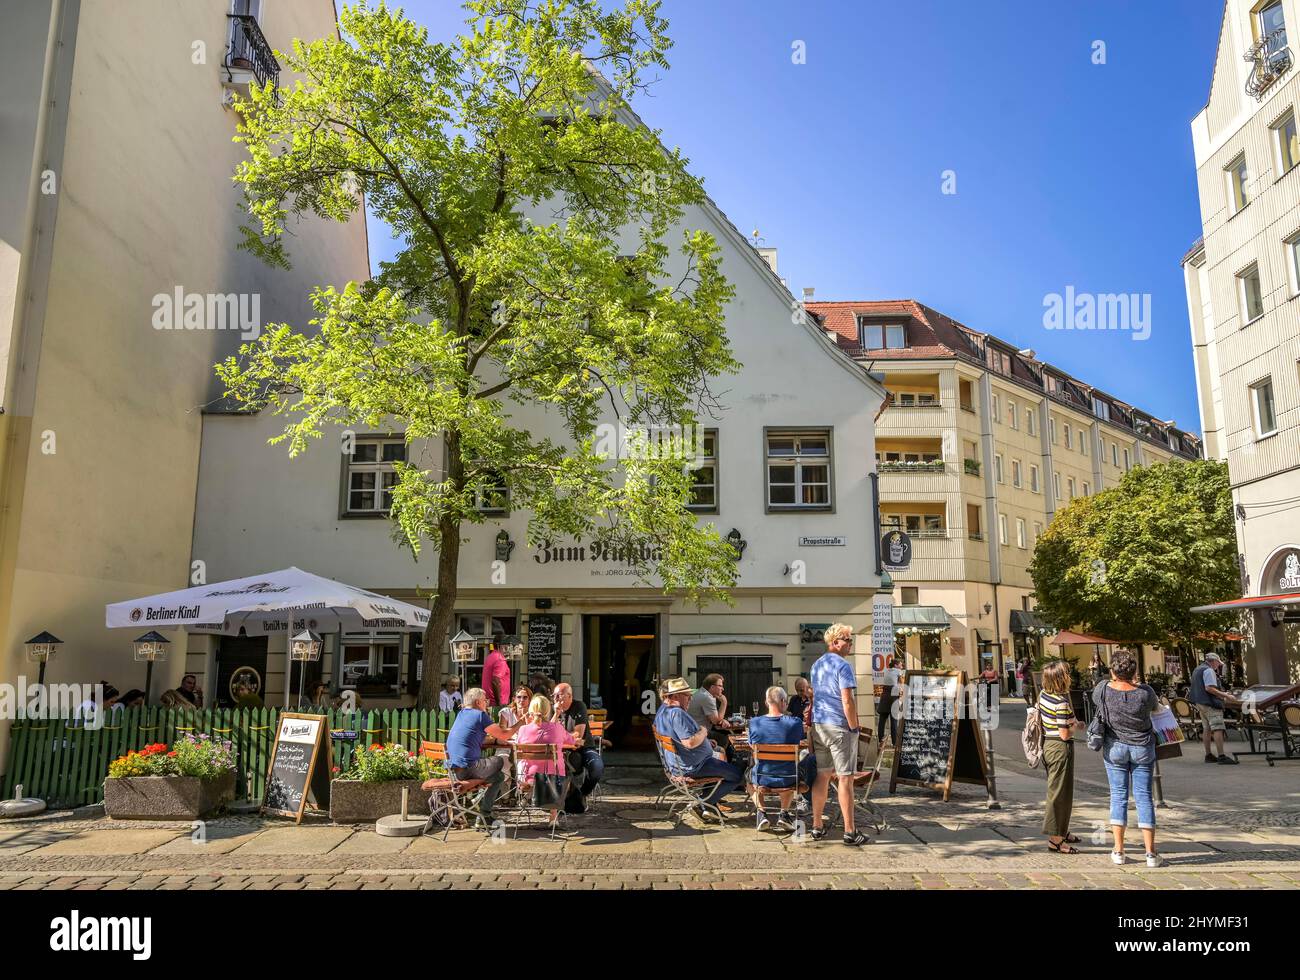 Restaurant zum Nussbaum, Propststrasse, Nikolaiviertel quarter, Mitte, Berlin, Germany Stock Photo